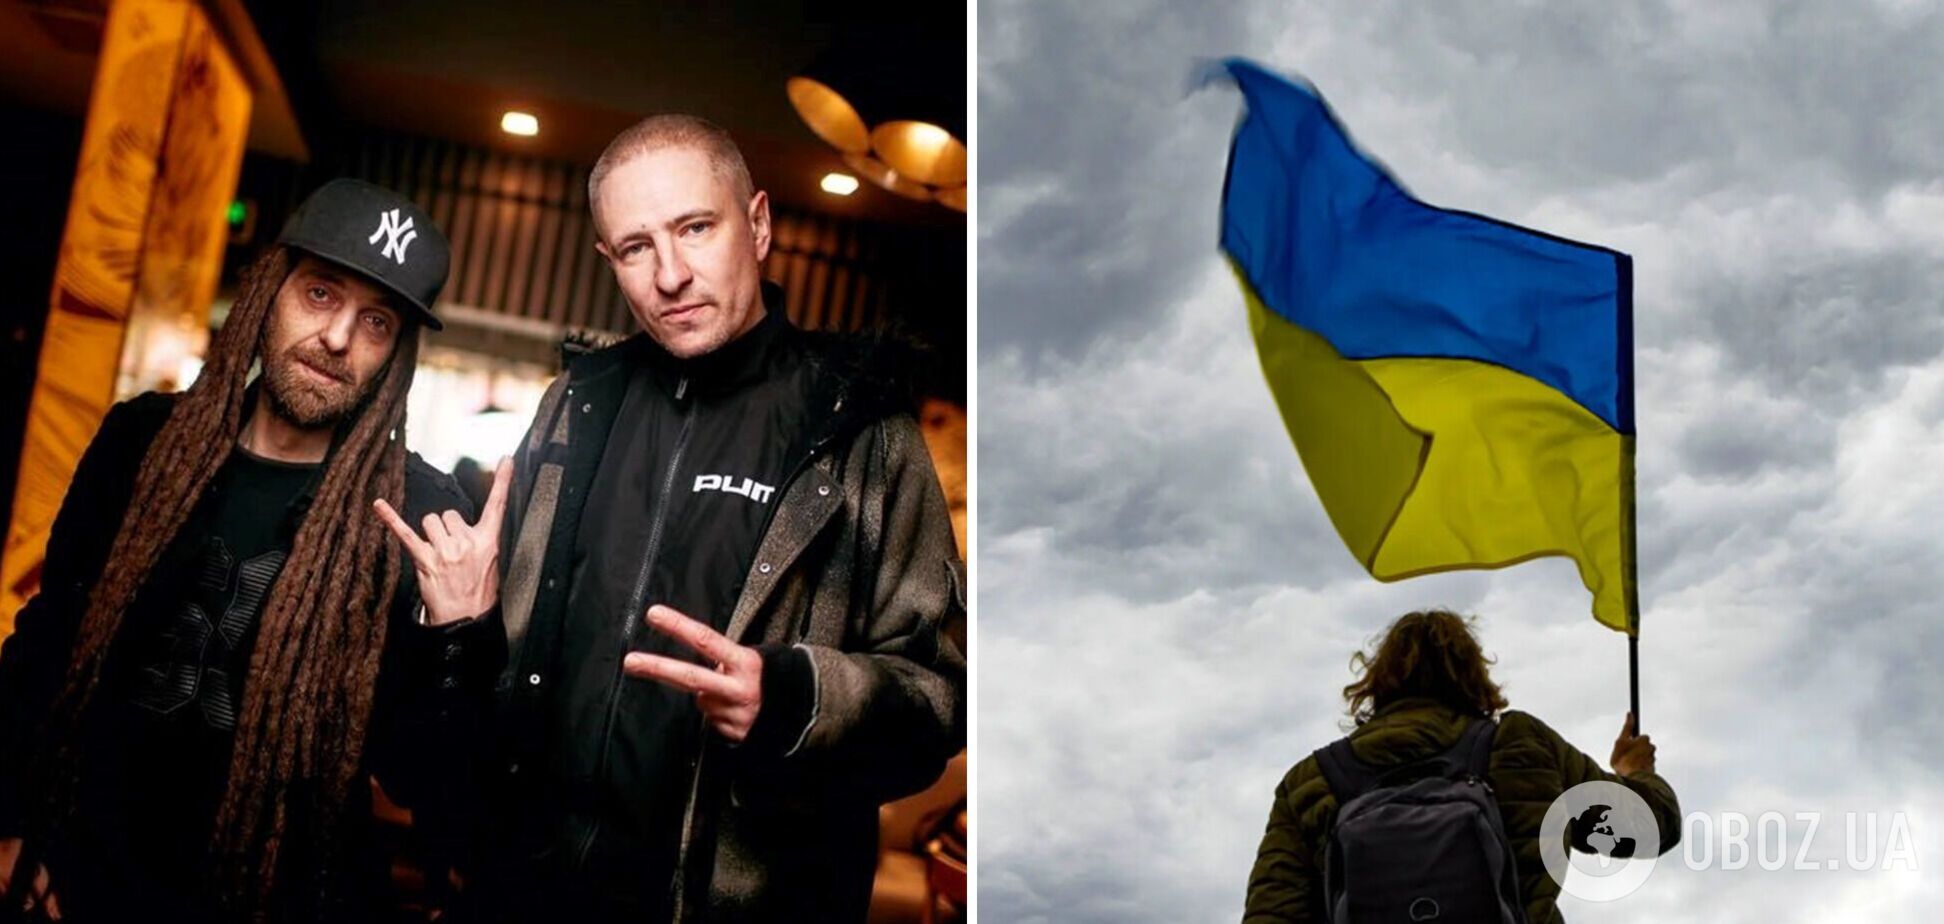 Хотів винести прапор України: Мурік із Green Grey розповів про плани поїхати в Росію